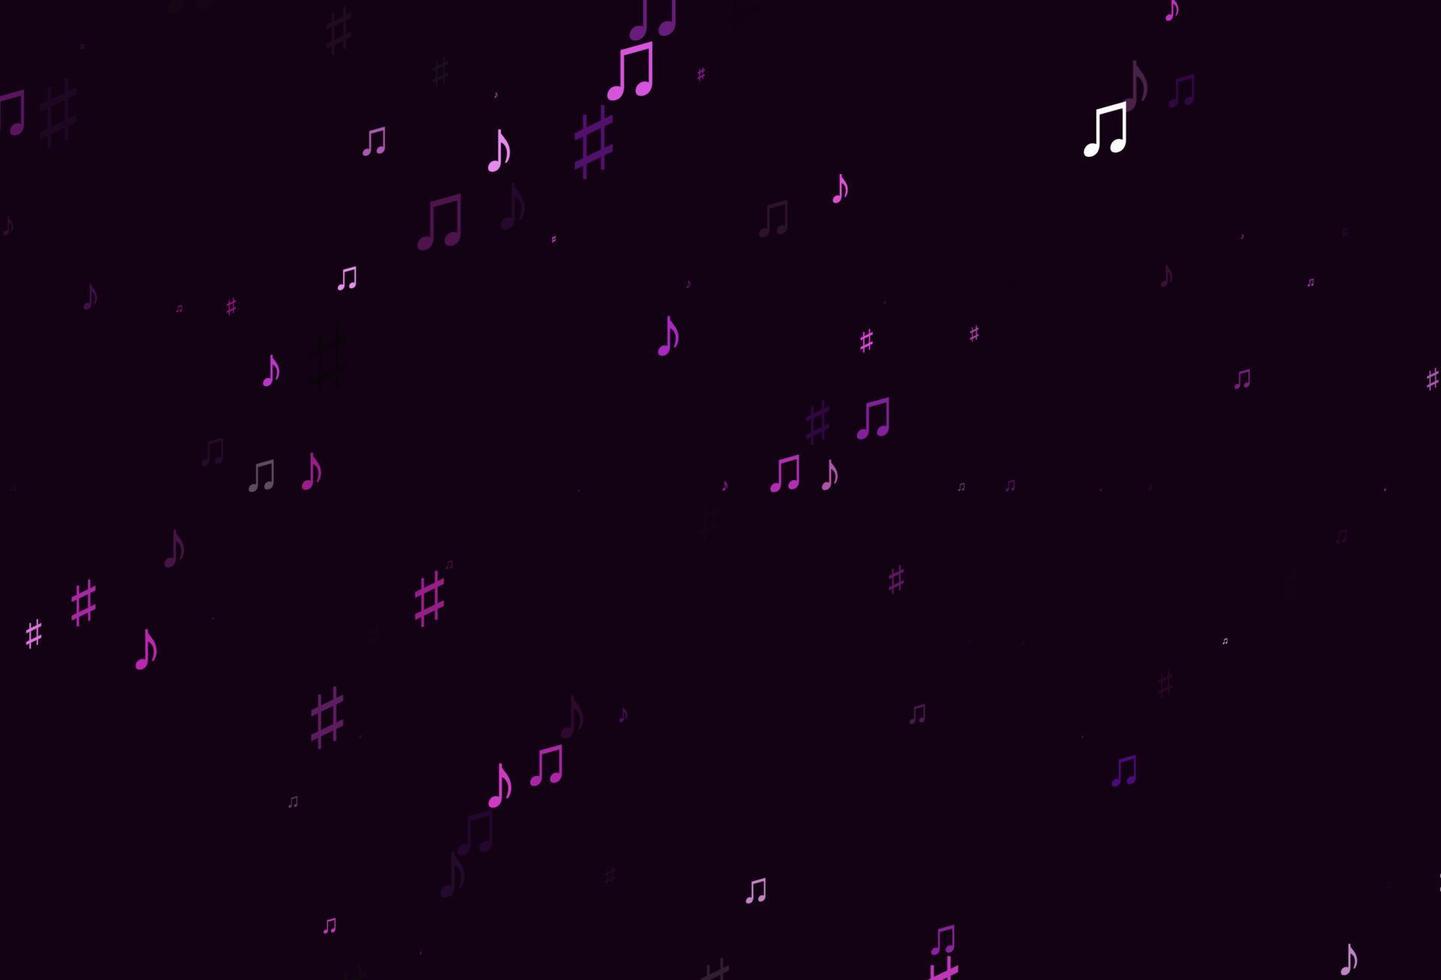 motif vectoriel rose clair et bleu avec des éléments de musique.